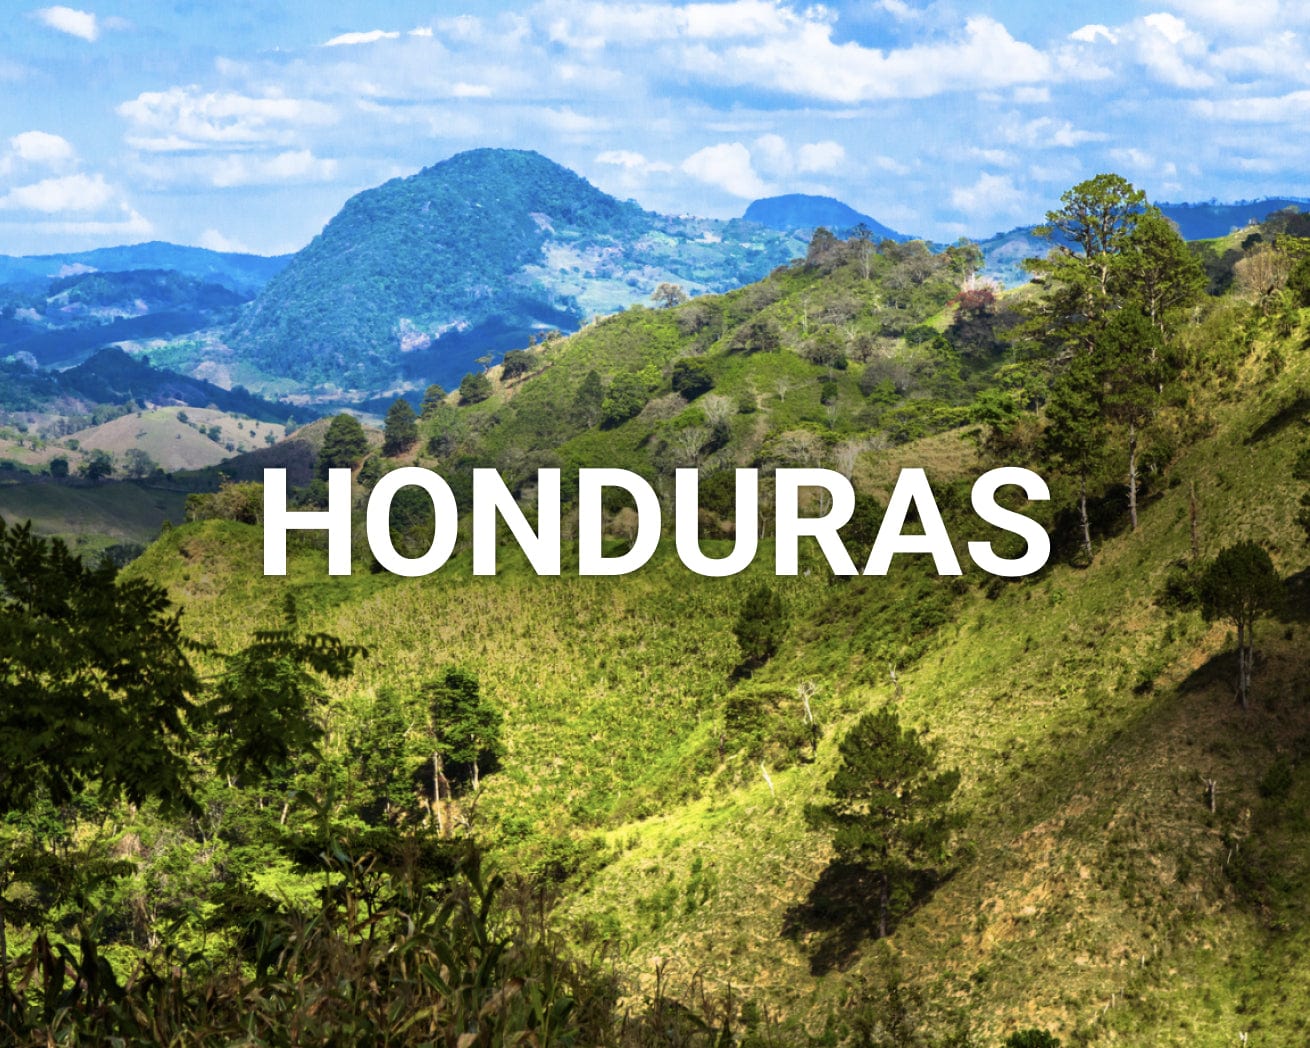 Honduras main image